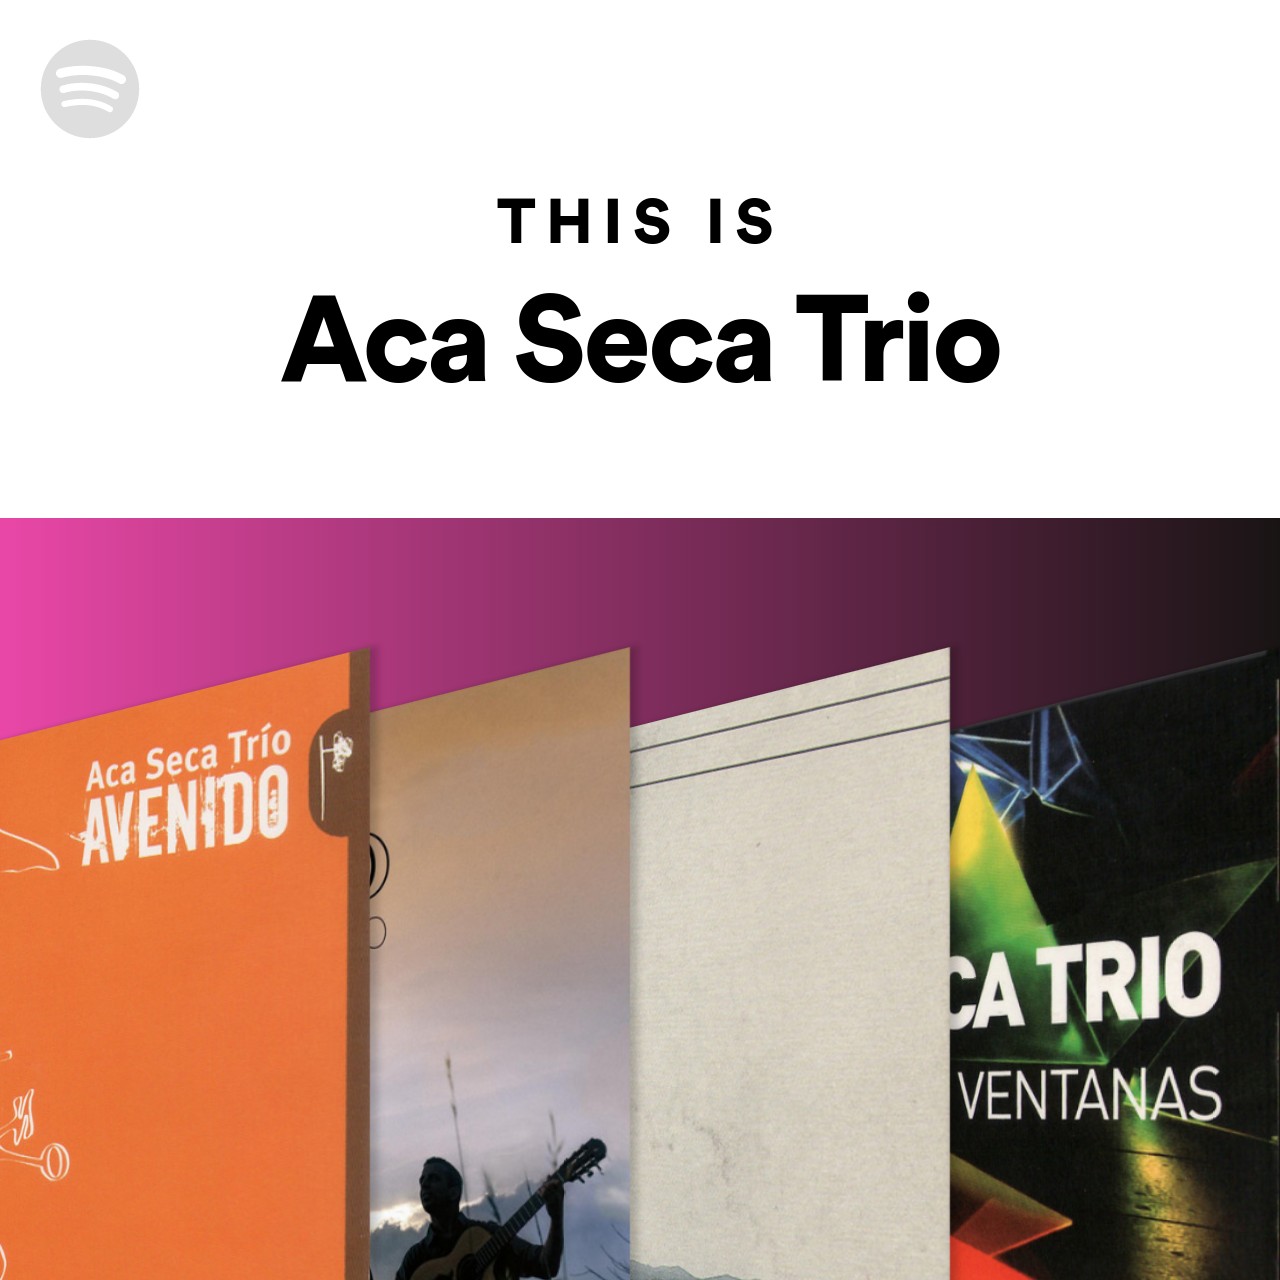 This Is Aca Seca Trio